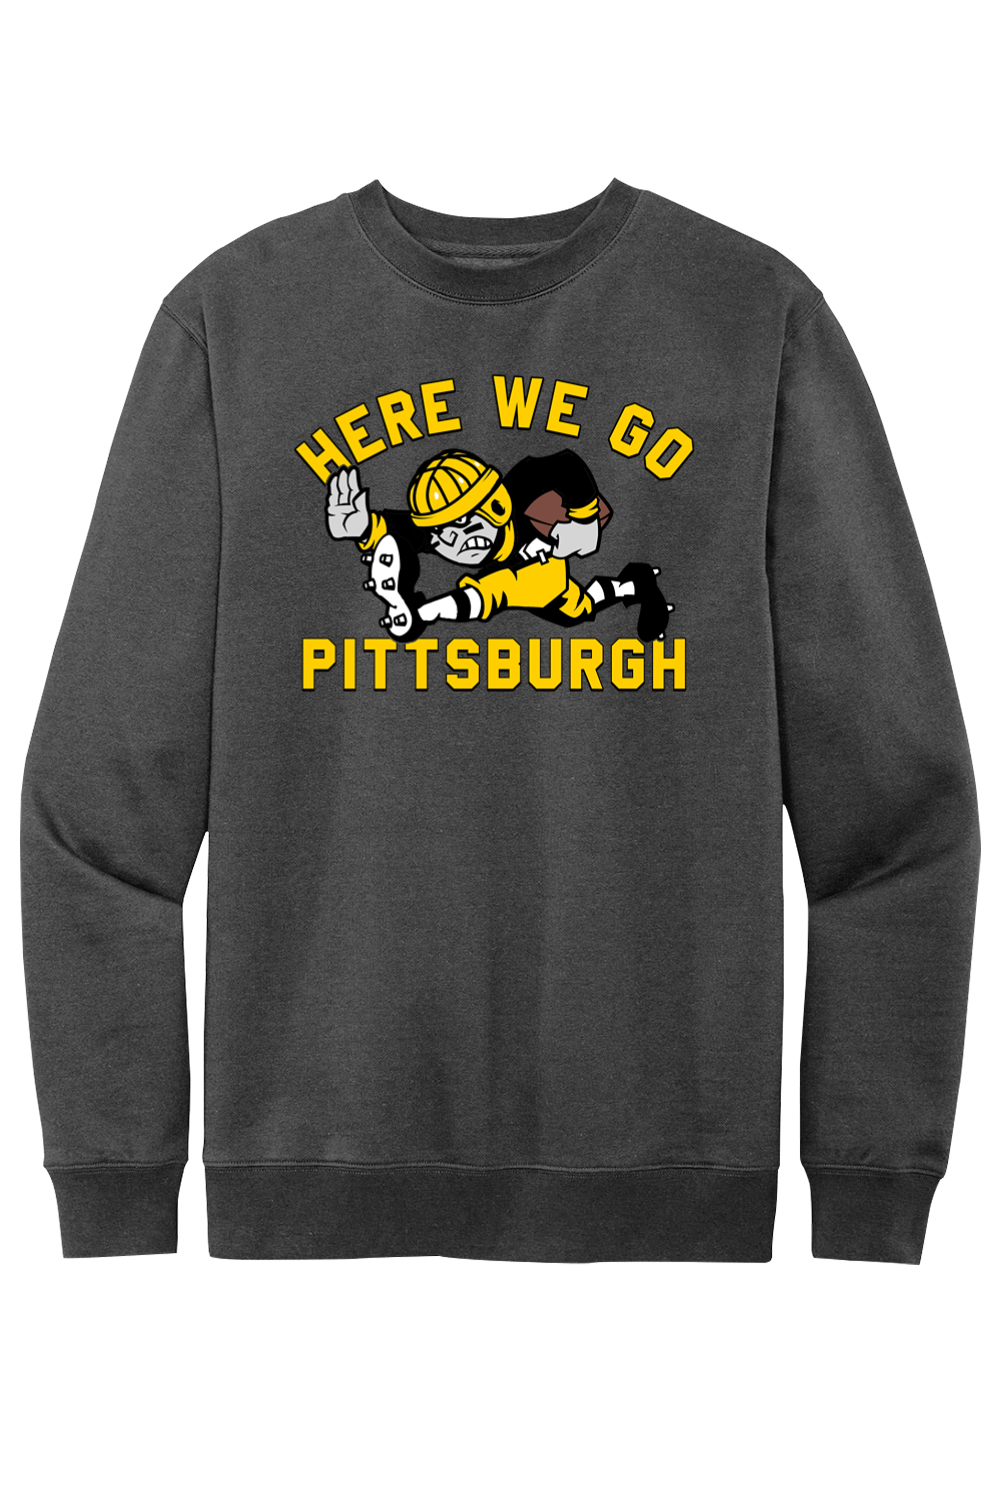 Here We Go Pittsburgh - Old School Football - Fleece Crew - Yinzylvania